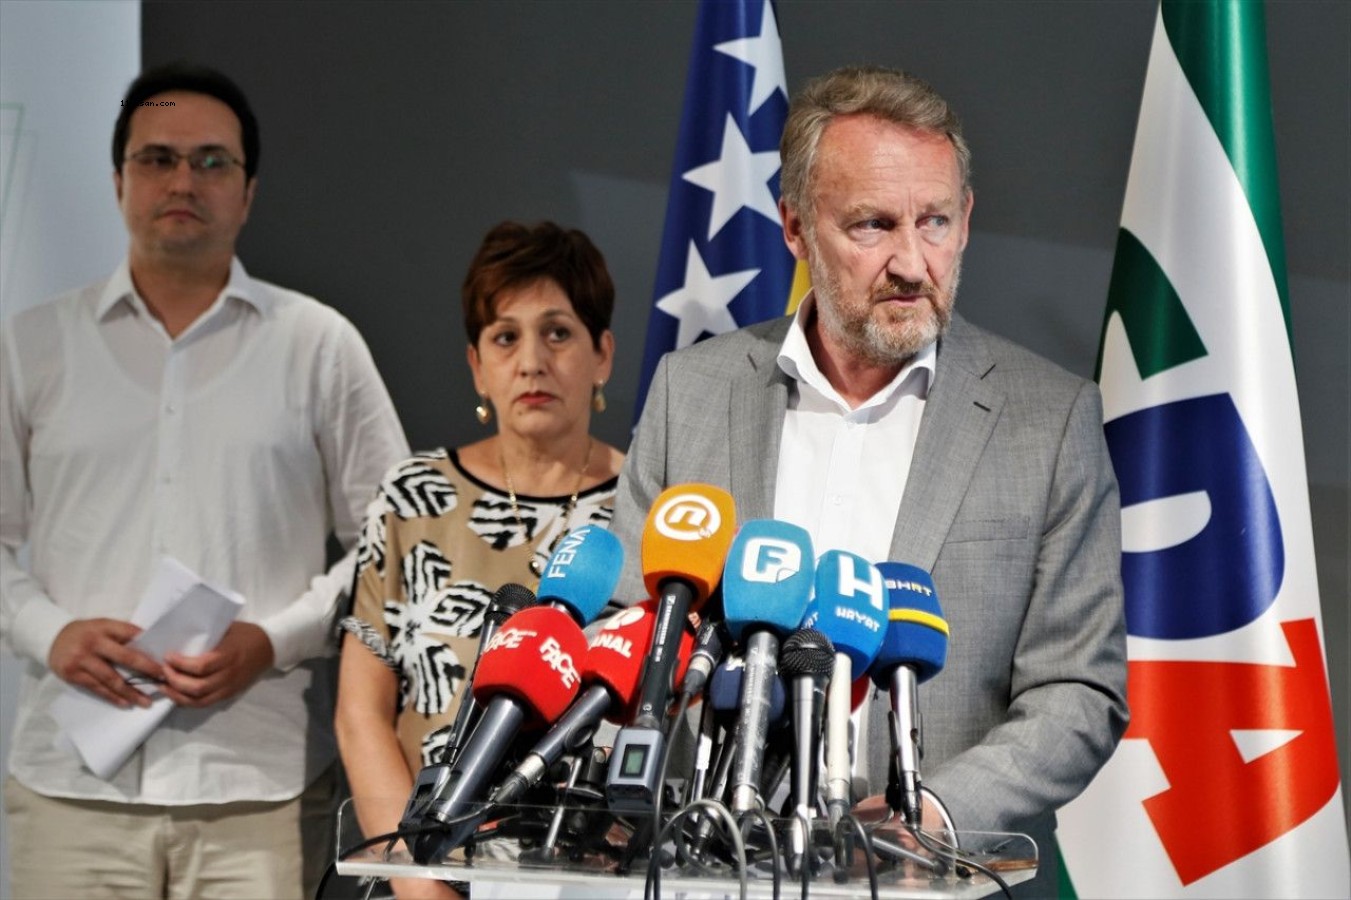 Bosna Hersek'te seçim yasasında değişiklik dayatılacağı iddiasına Boşnaklar tepkili